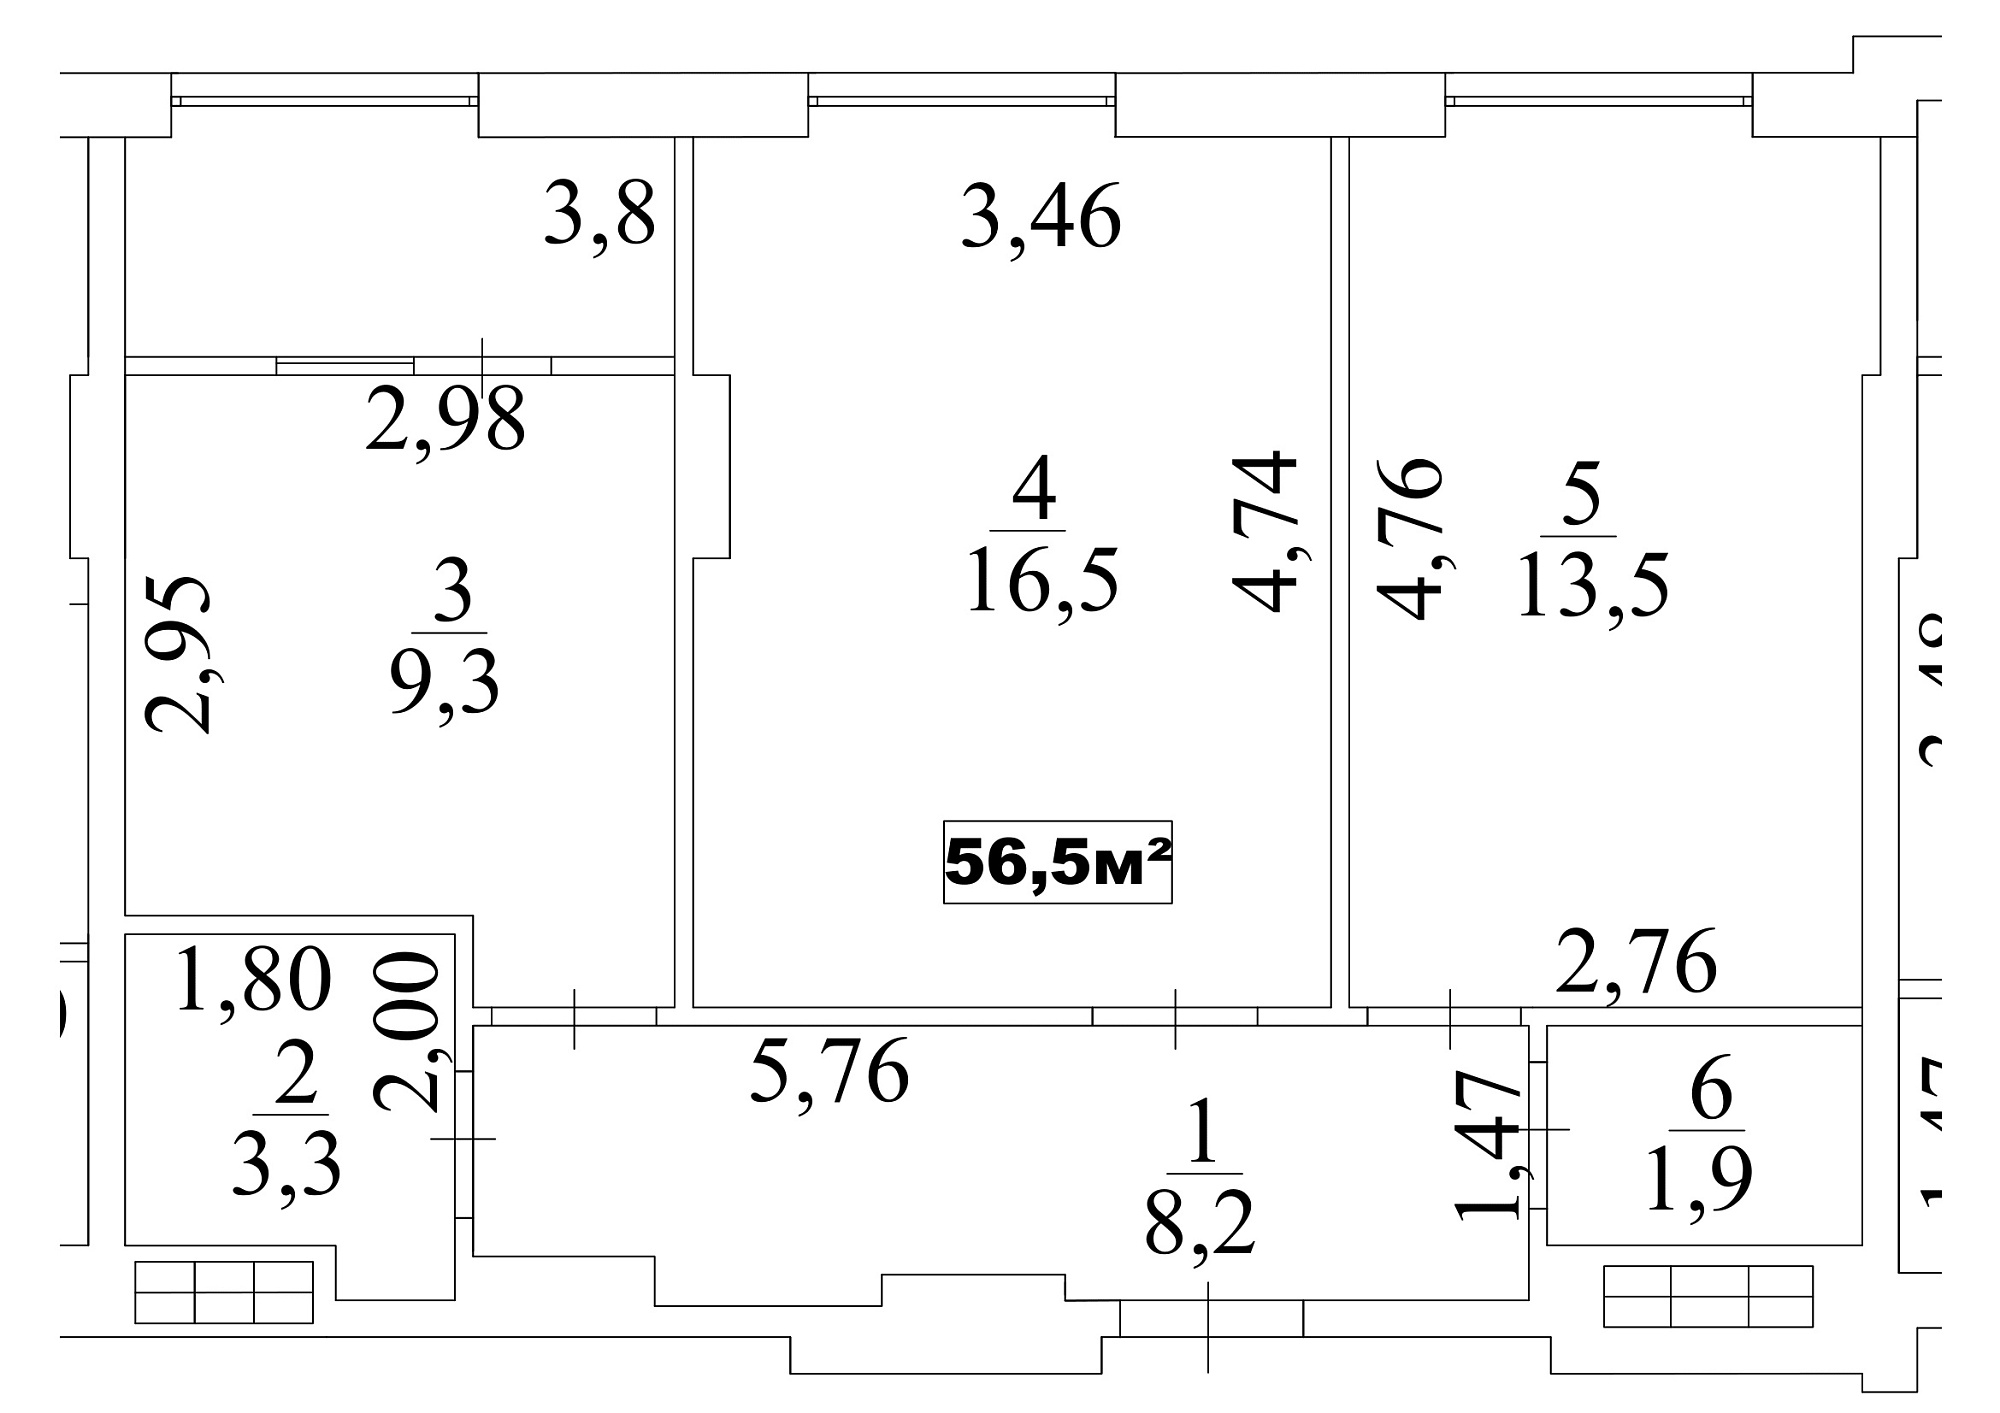 Планировка 2-к квартира площей 56.5м2, AB-10-08/00067.